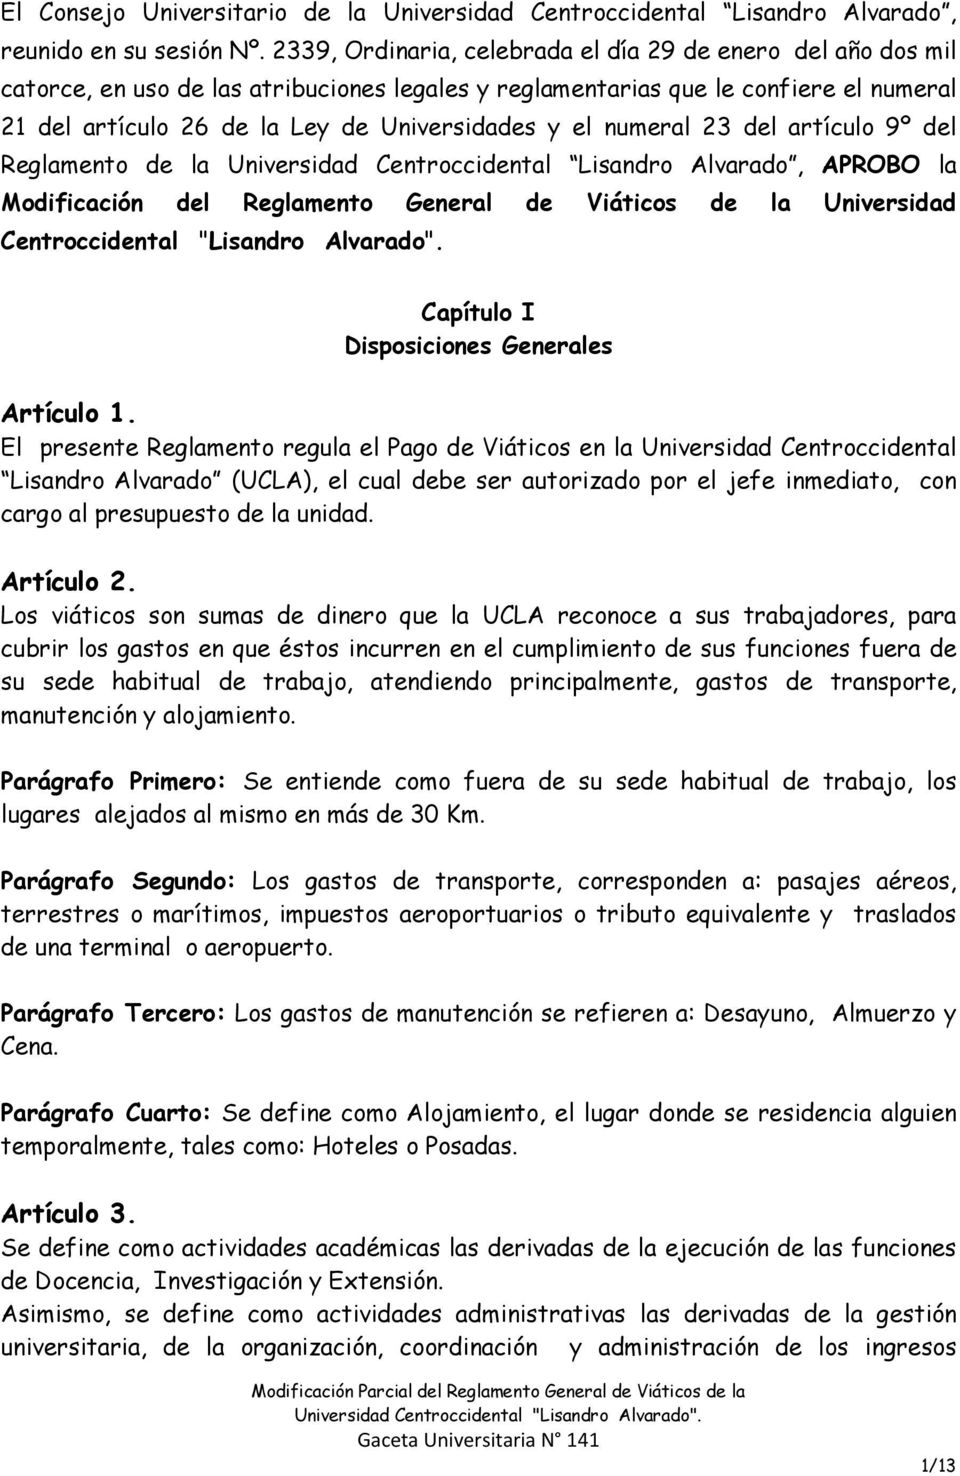 el numeral 23 del artículo 9º del Reglamento de la Universidad Centroccidental Lisandro Alvarado, APROBO la Modificación del Reglamento General de Viáticos de la Universidad Centroccidental "Lisandro